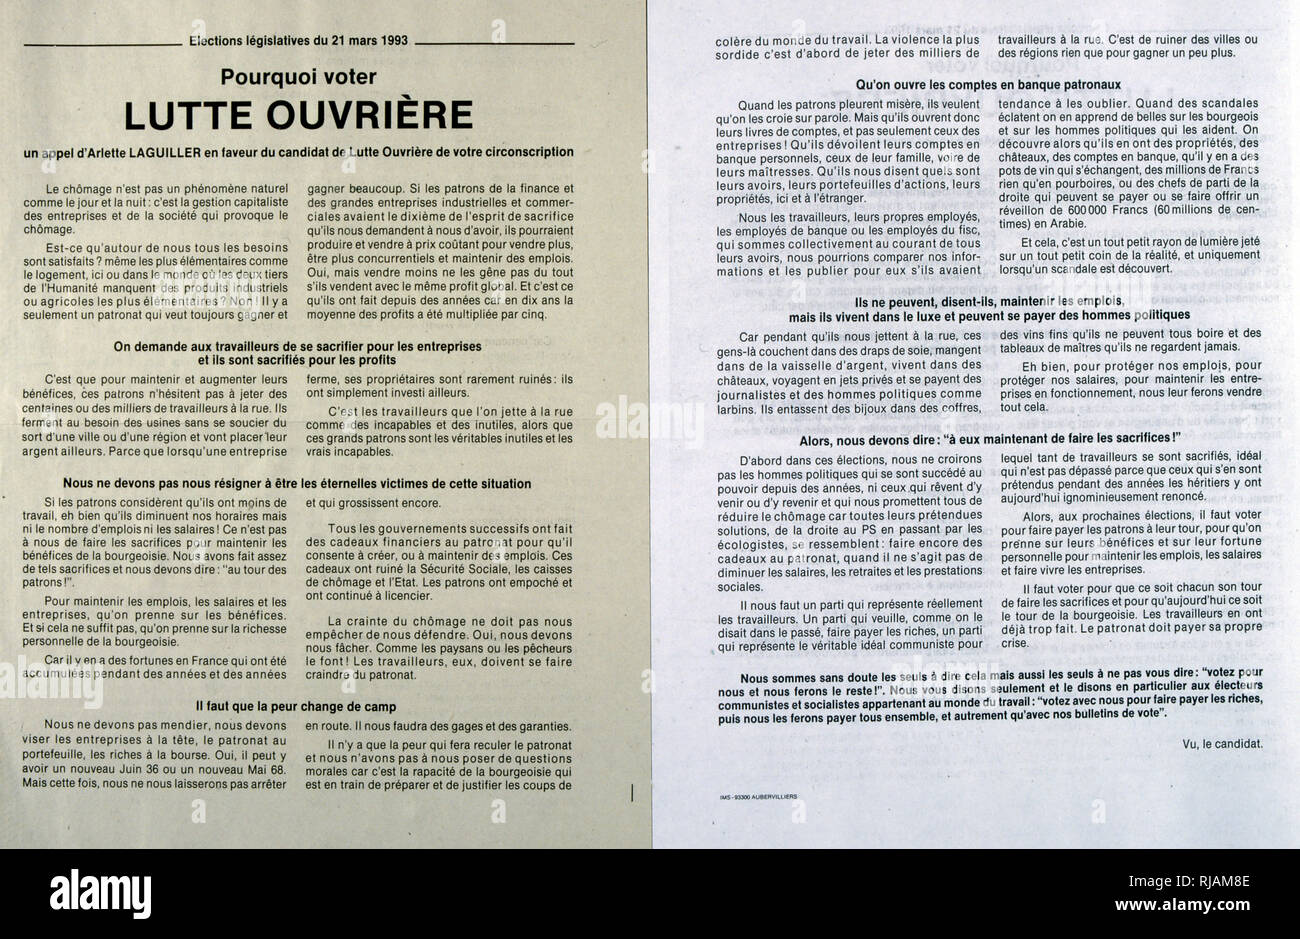 Cartel electoral del candidato, Arlette Laguiller (Lucha obrera), de la Asamblea Nacional Francesa de 1993 Foto de stock